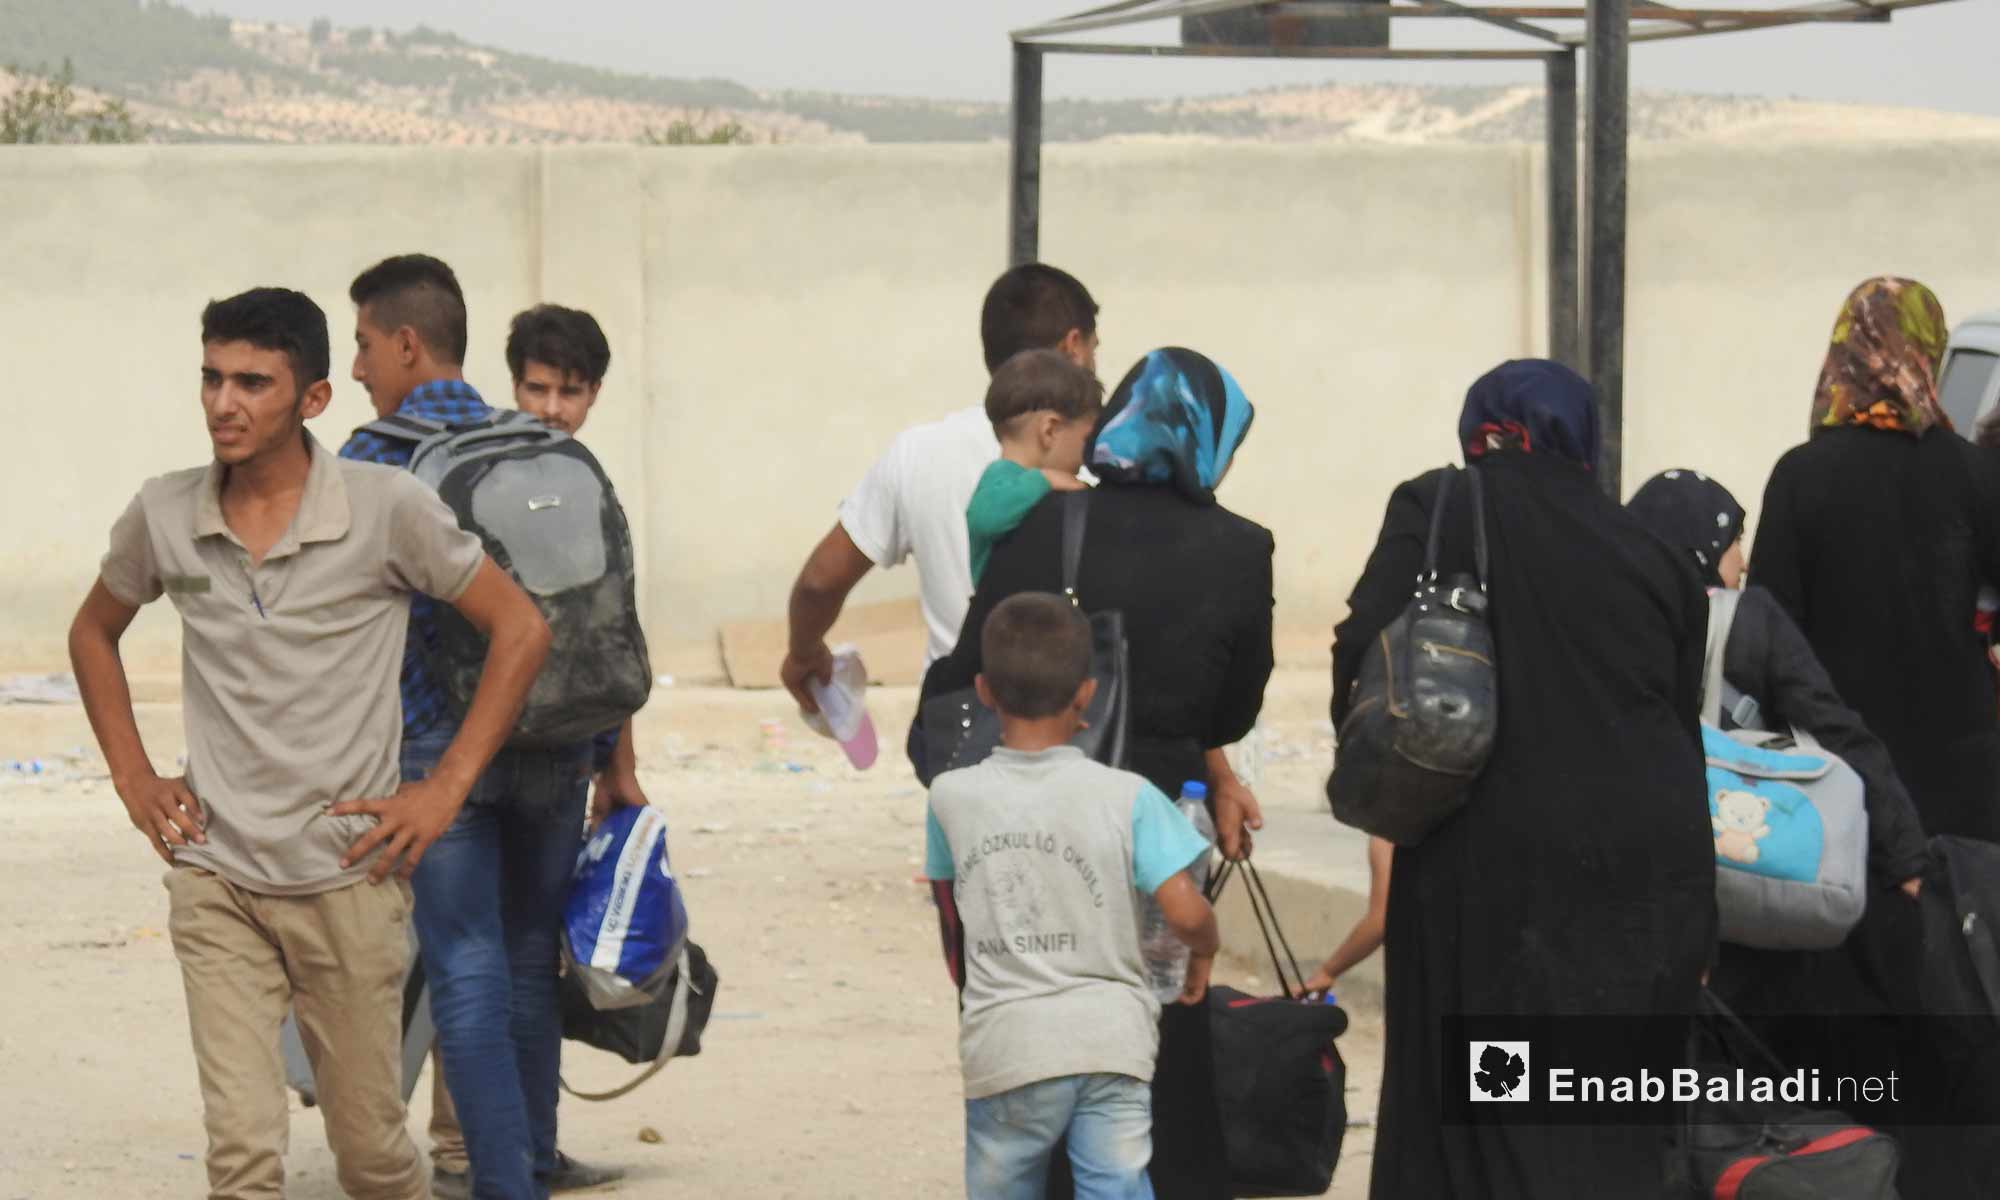 حركة المغادرين السوريين للعودة إلى تركيا بعد انتهاء إجازة العيد عند معبر باب السلامة الحدودي شمال حلب - 16 أيلول 2017 (عنب بلدي)